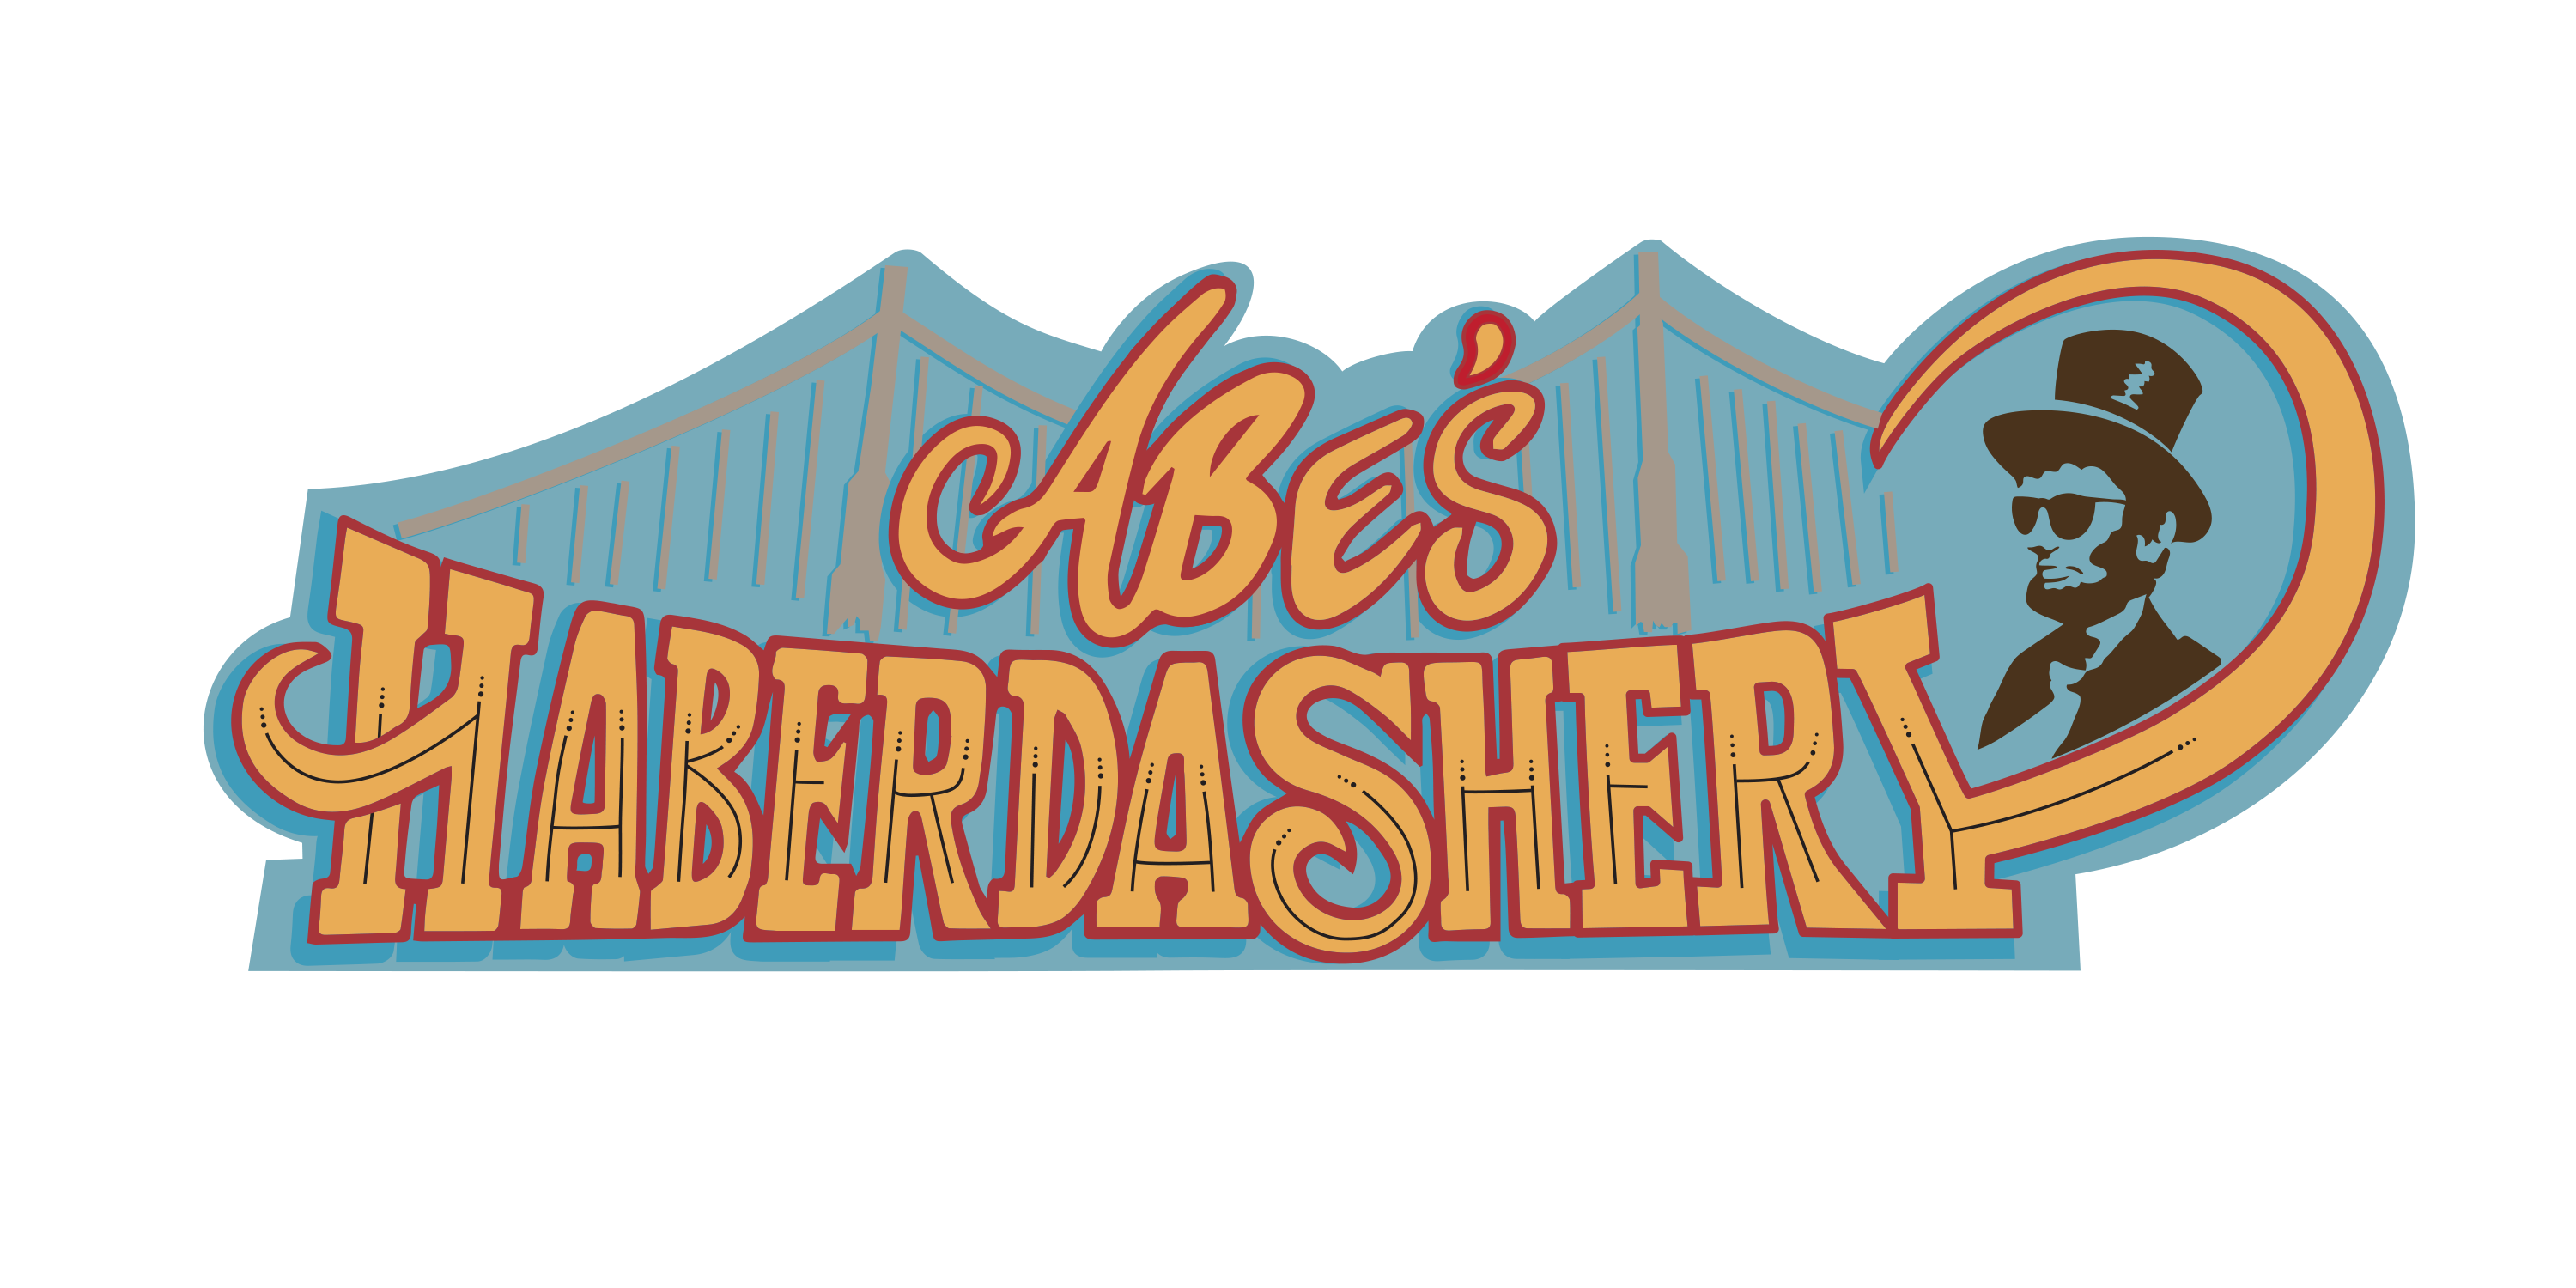 Abe's Haberdashery